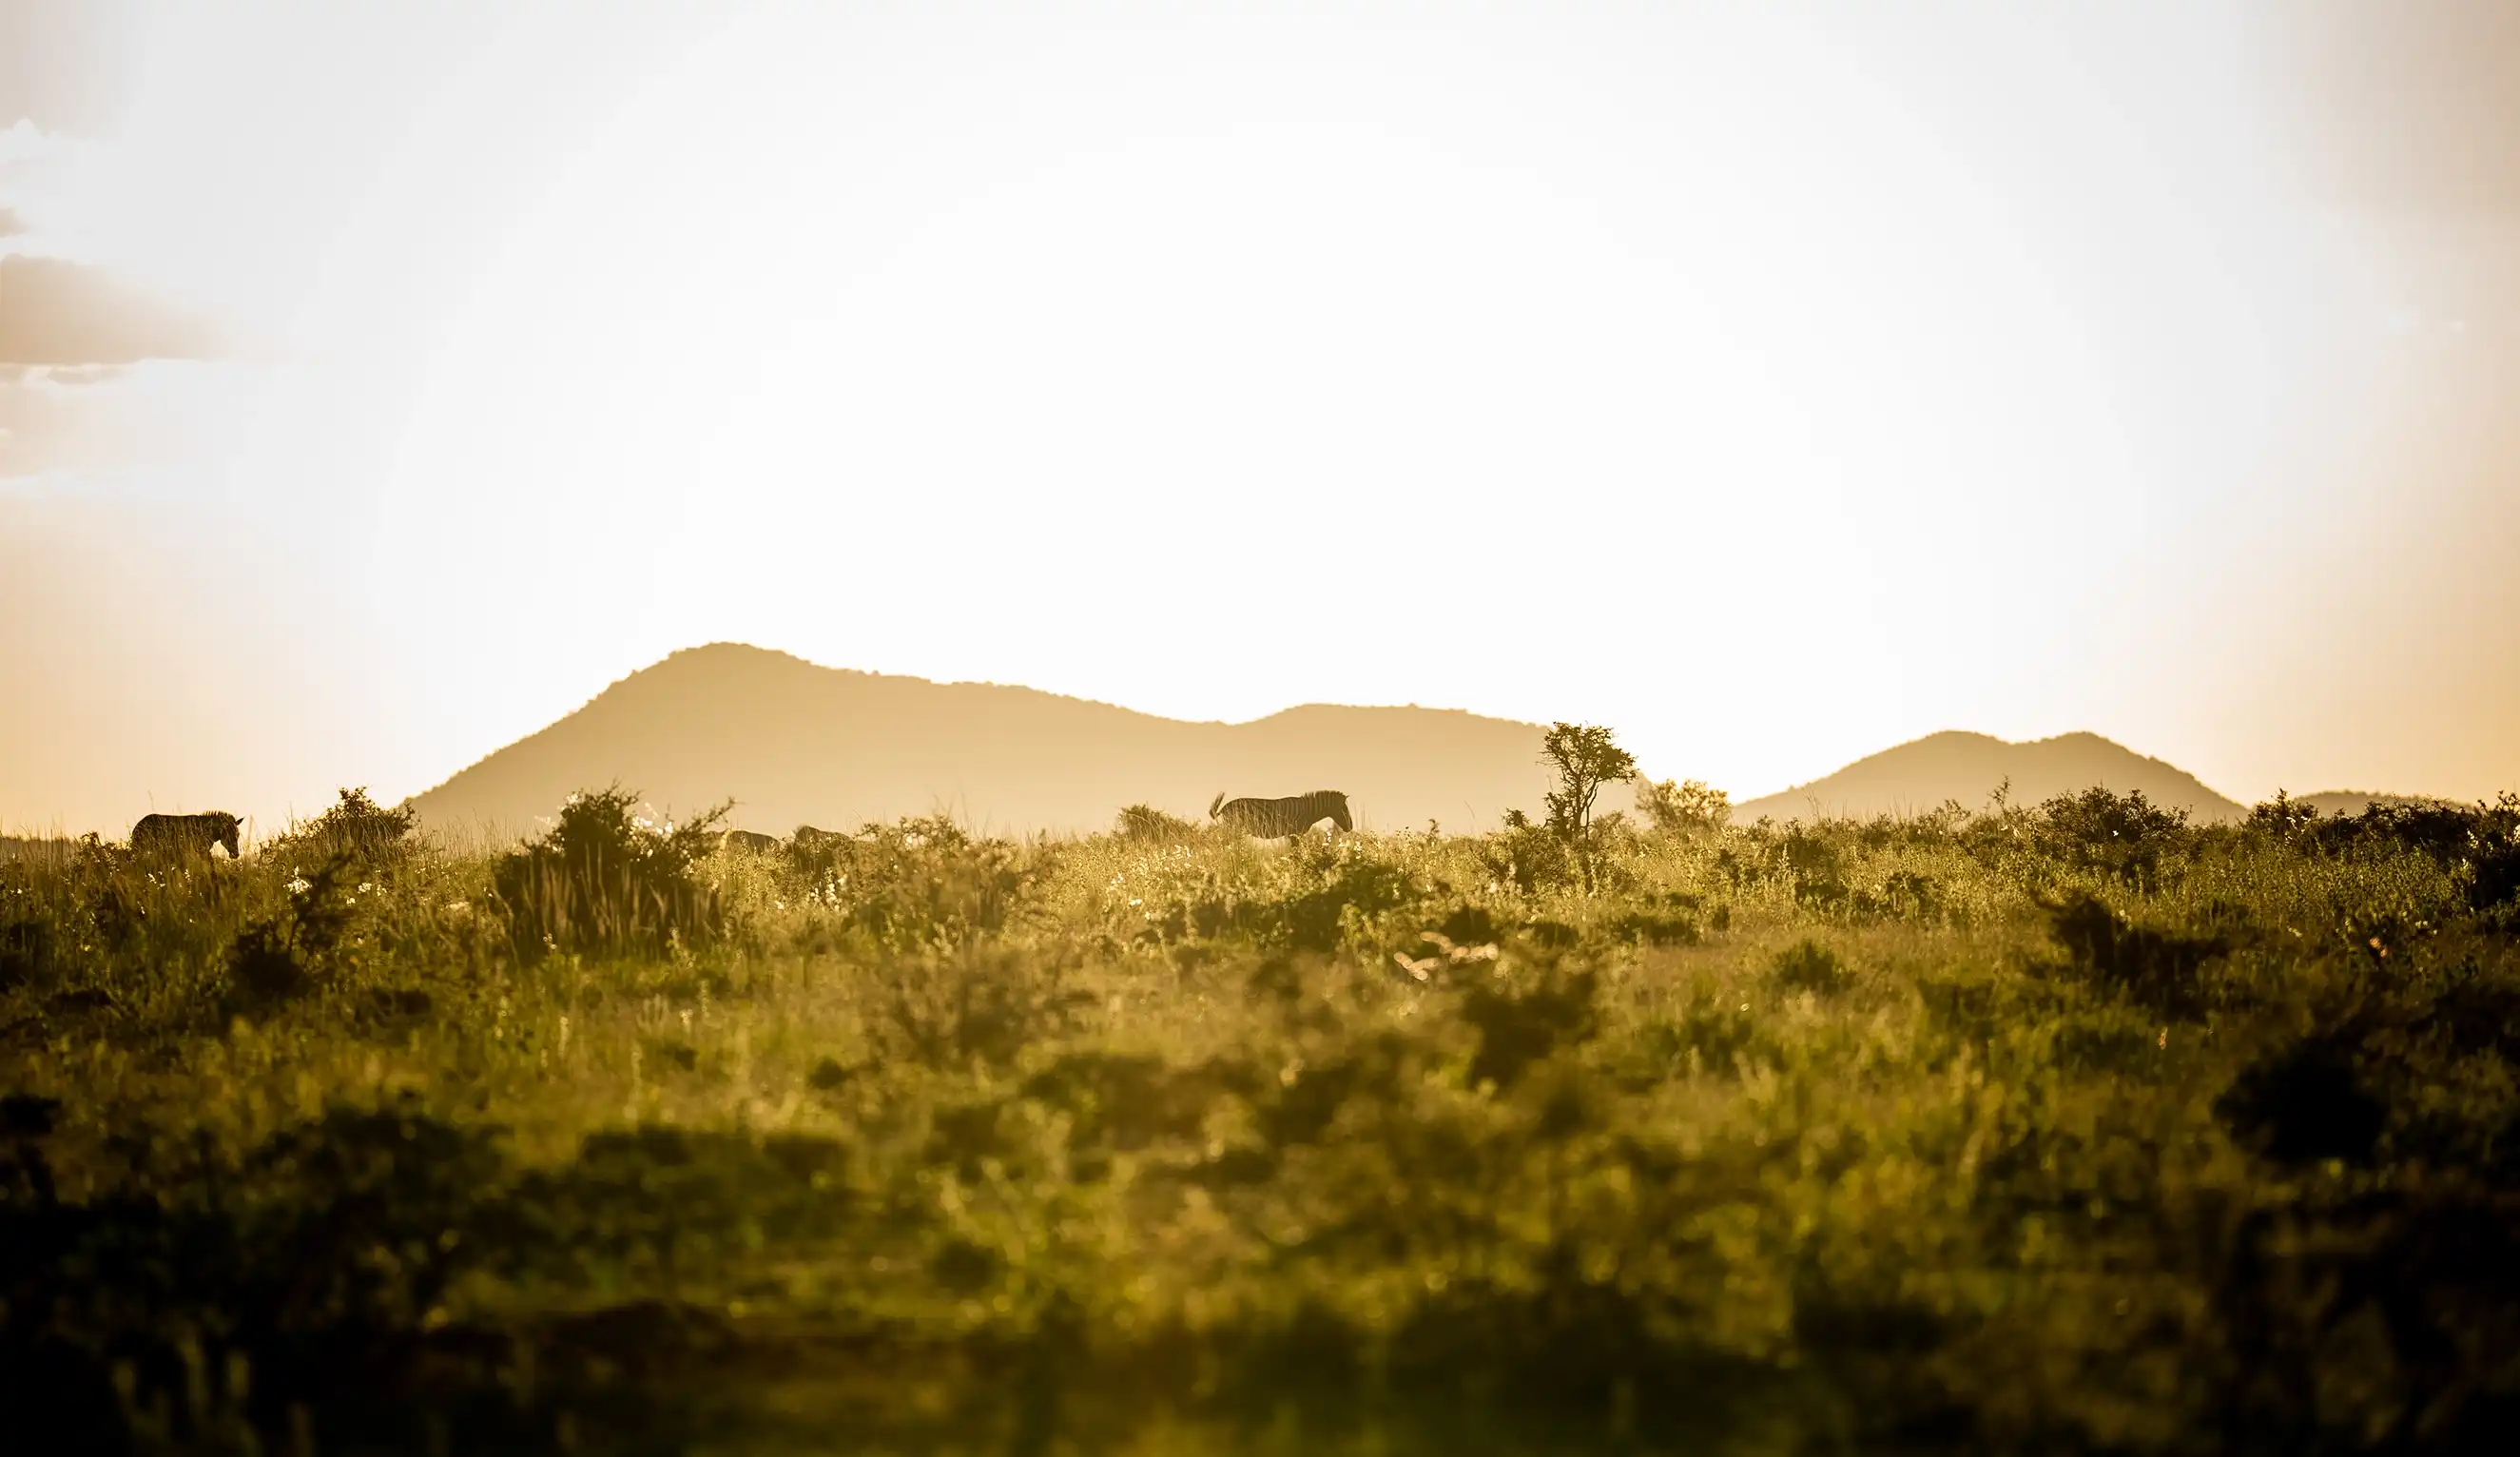 Landschaftliches Bild von zwei Zebras, die durch die Savanne laufen, während die Sonne hell über einen Bergkamm scheint